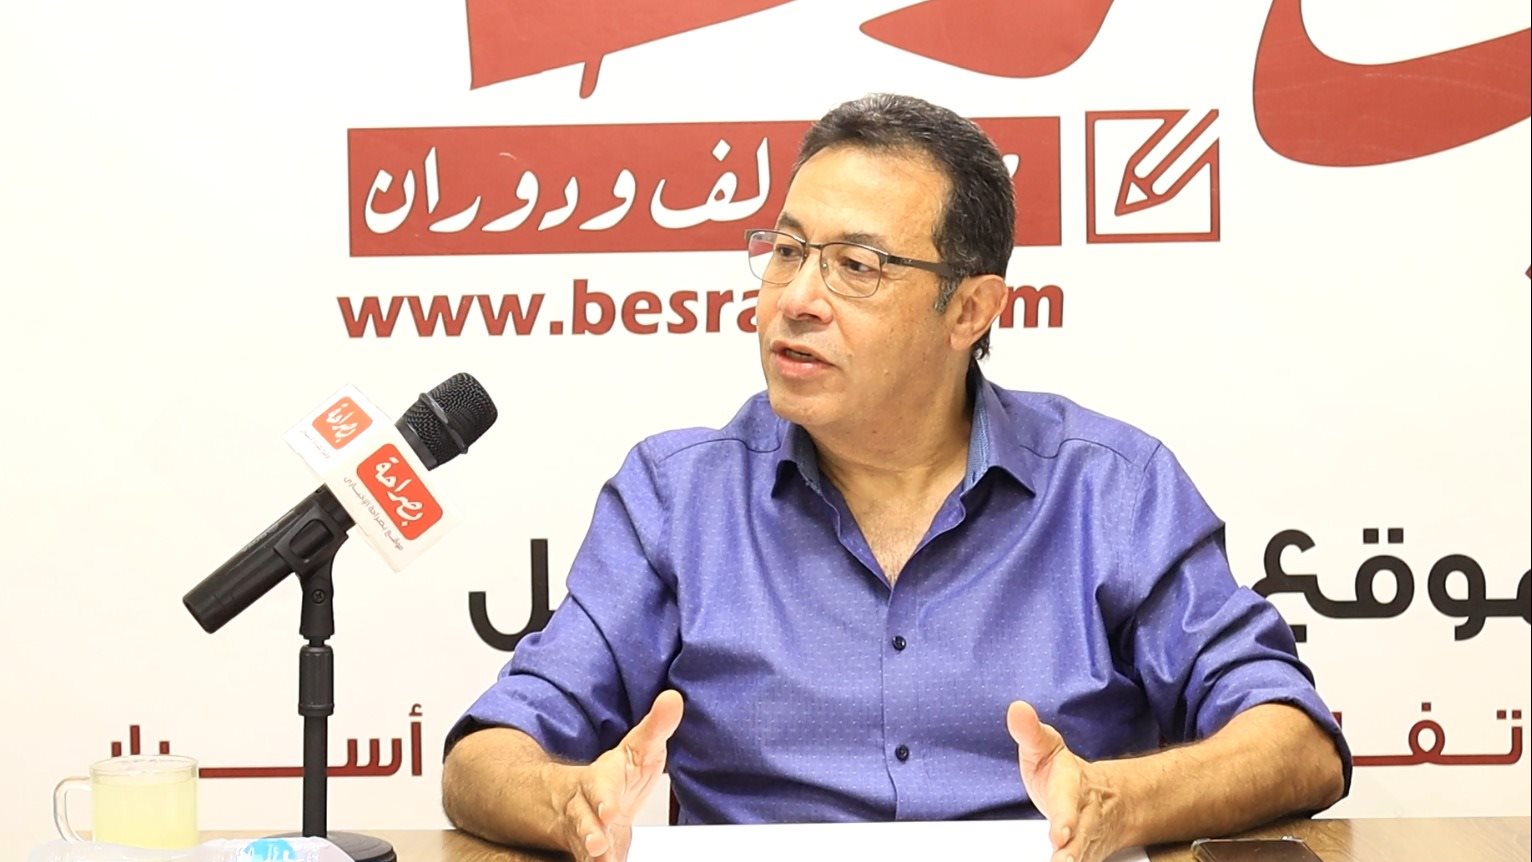 الكاتب الصحفى والإعلامى محمد هانى